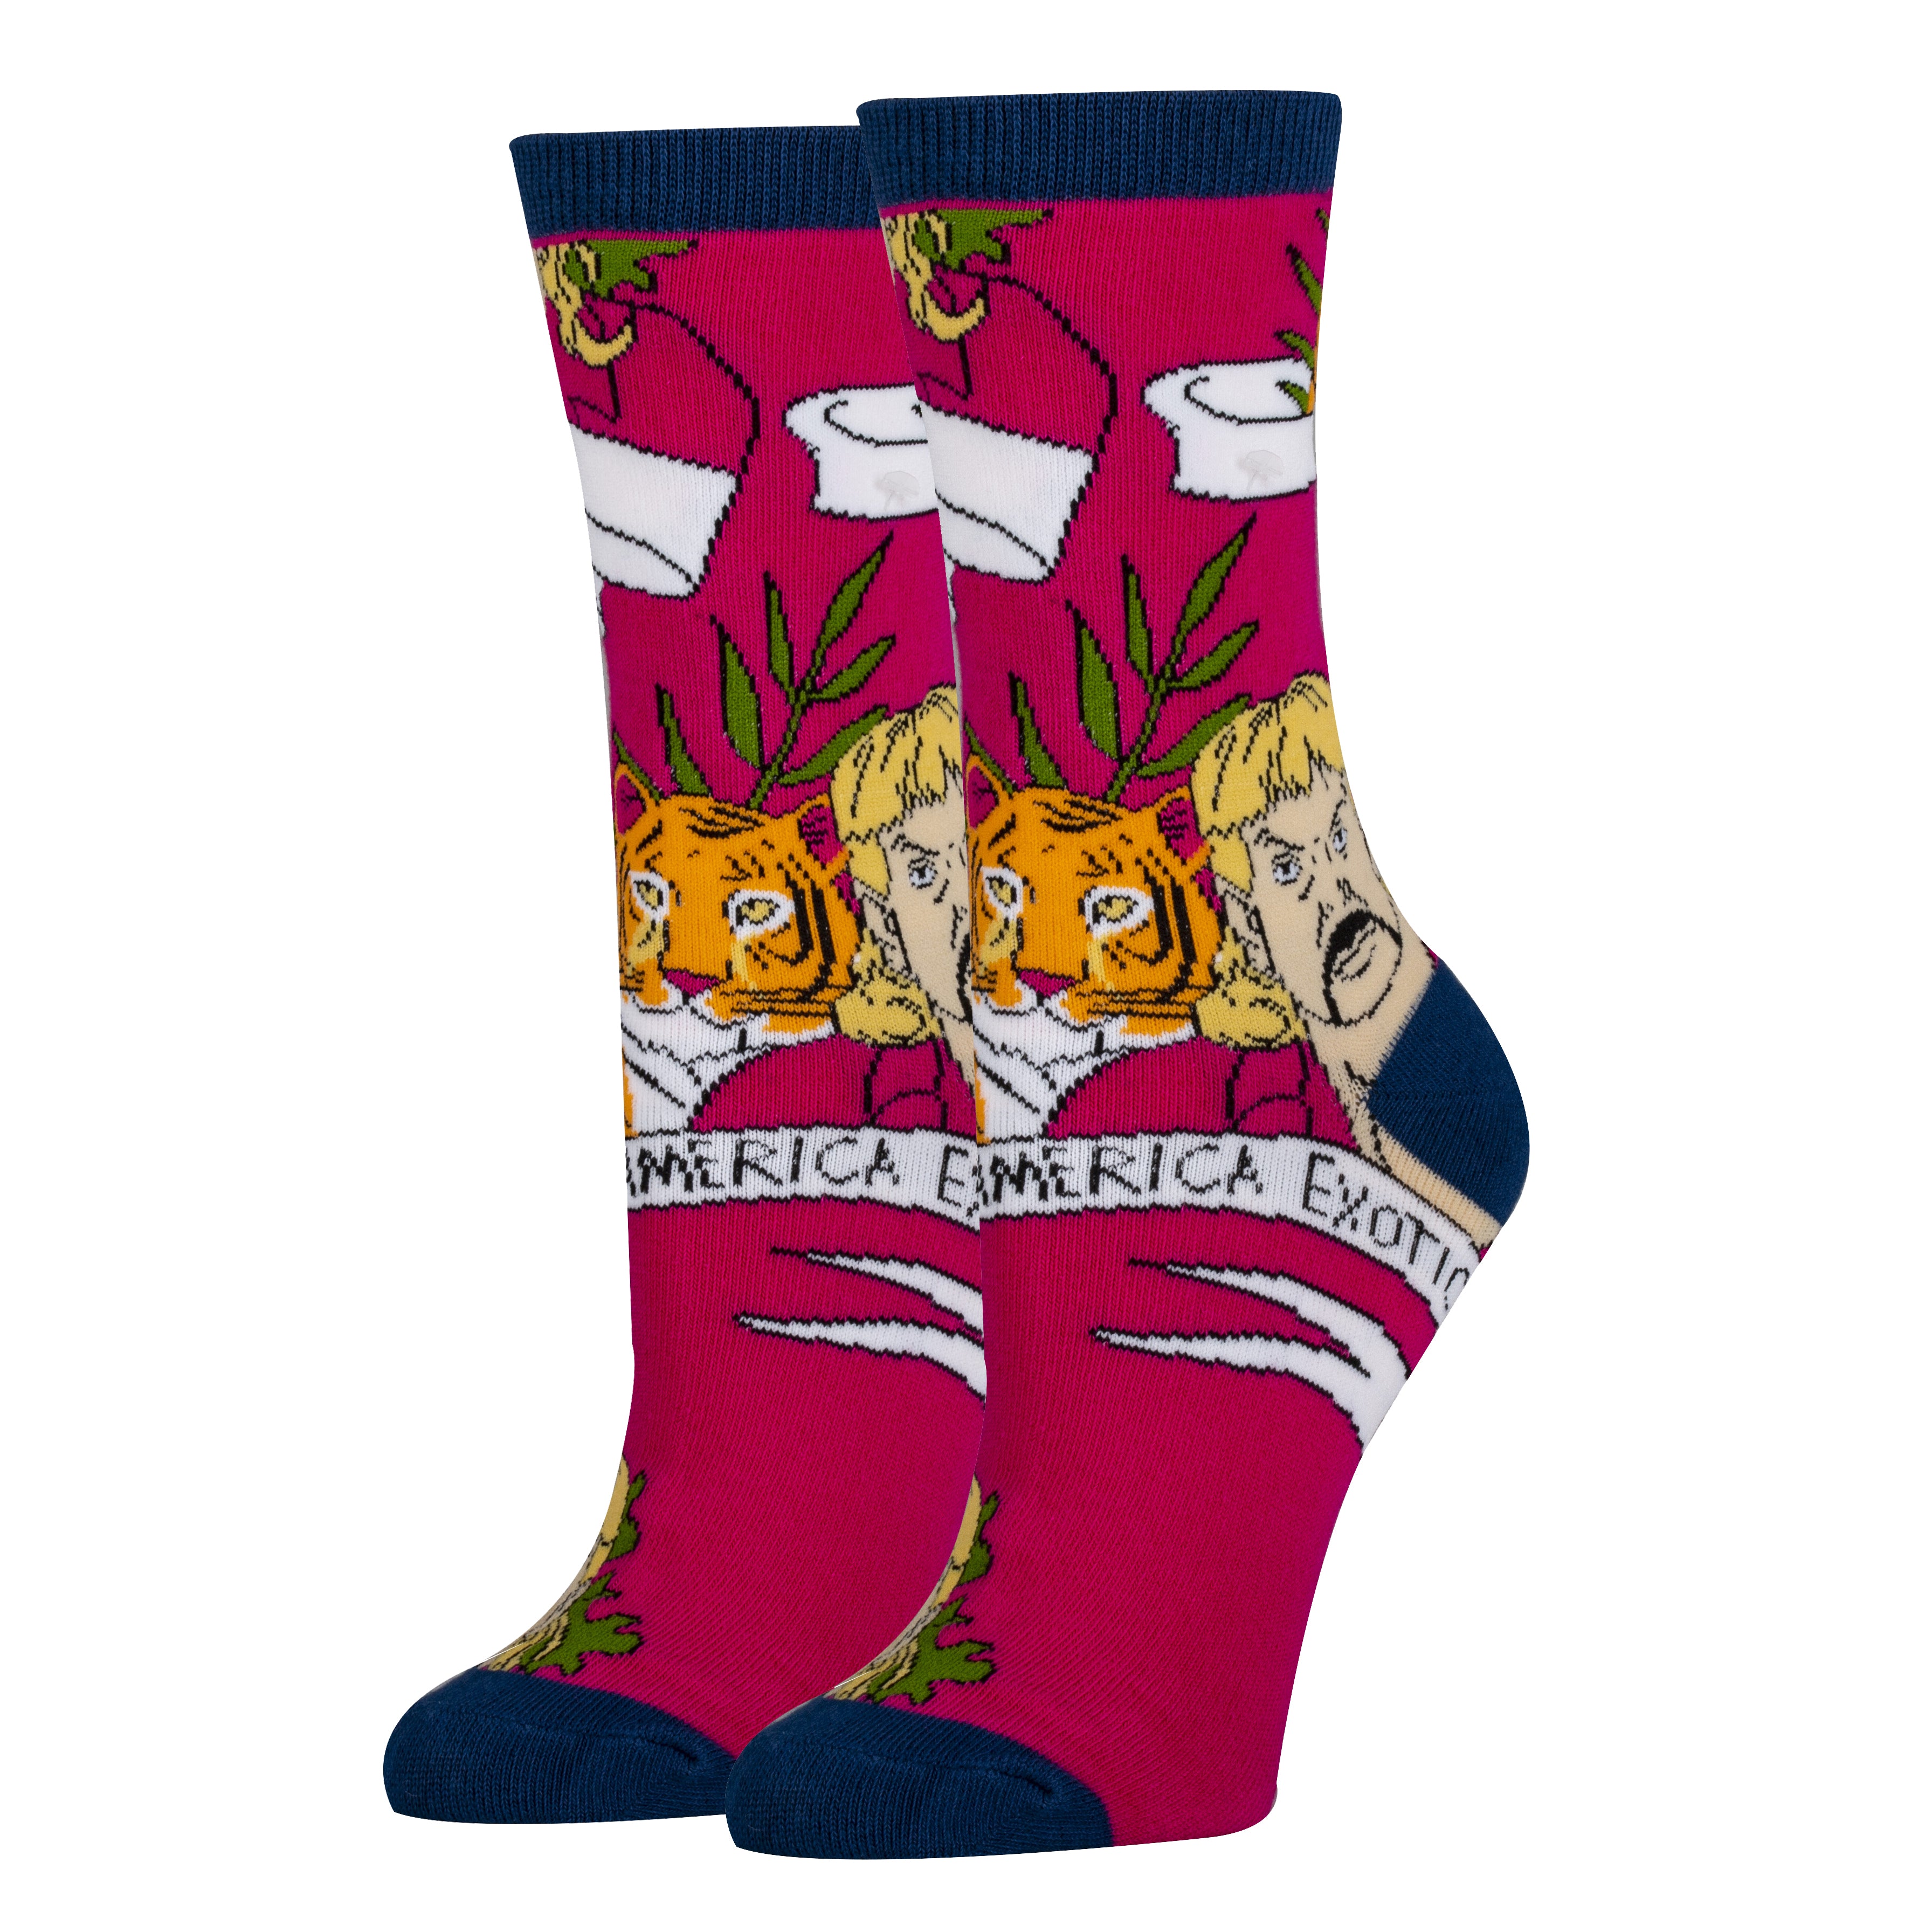 Free Joe Socks | Novelty Crew Socks For Women